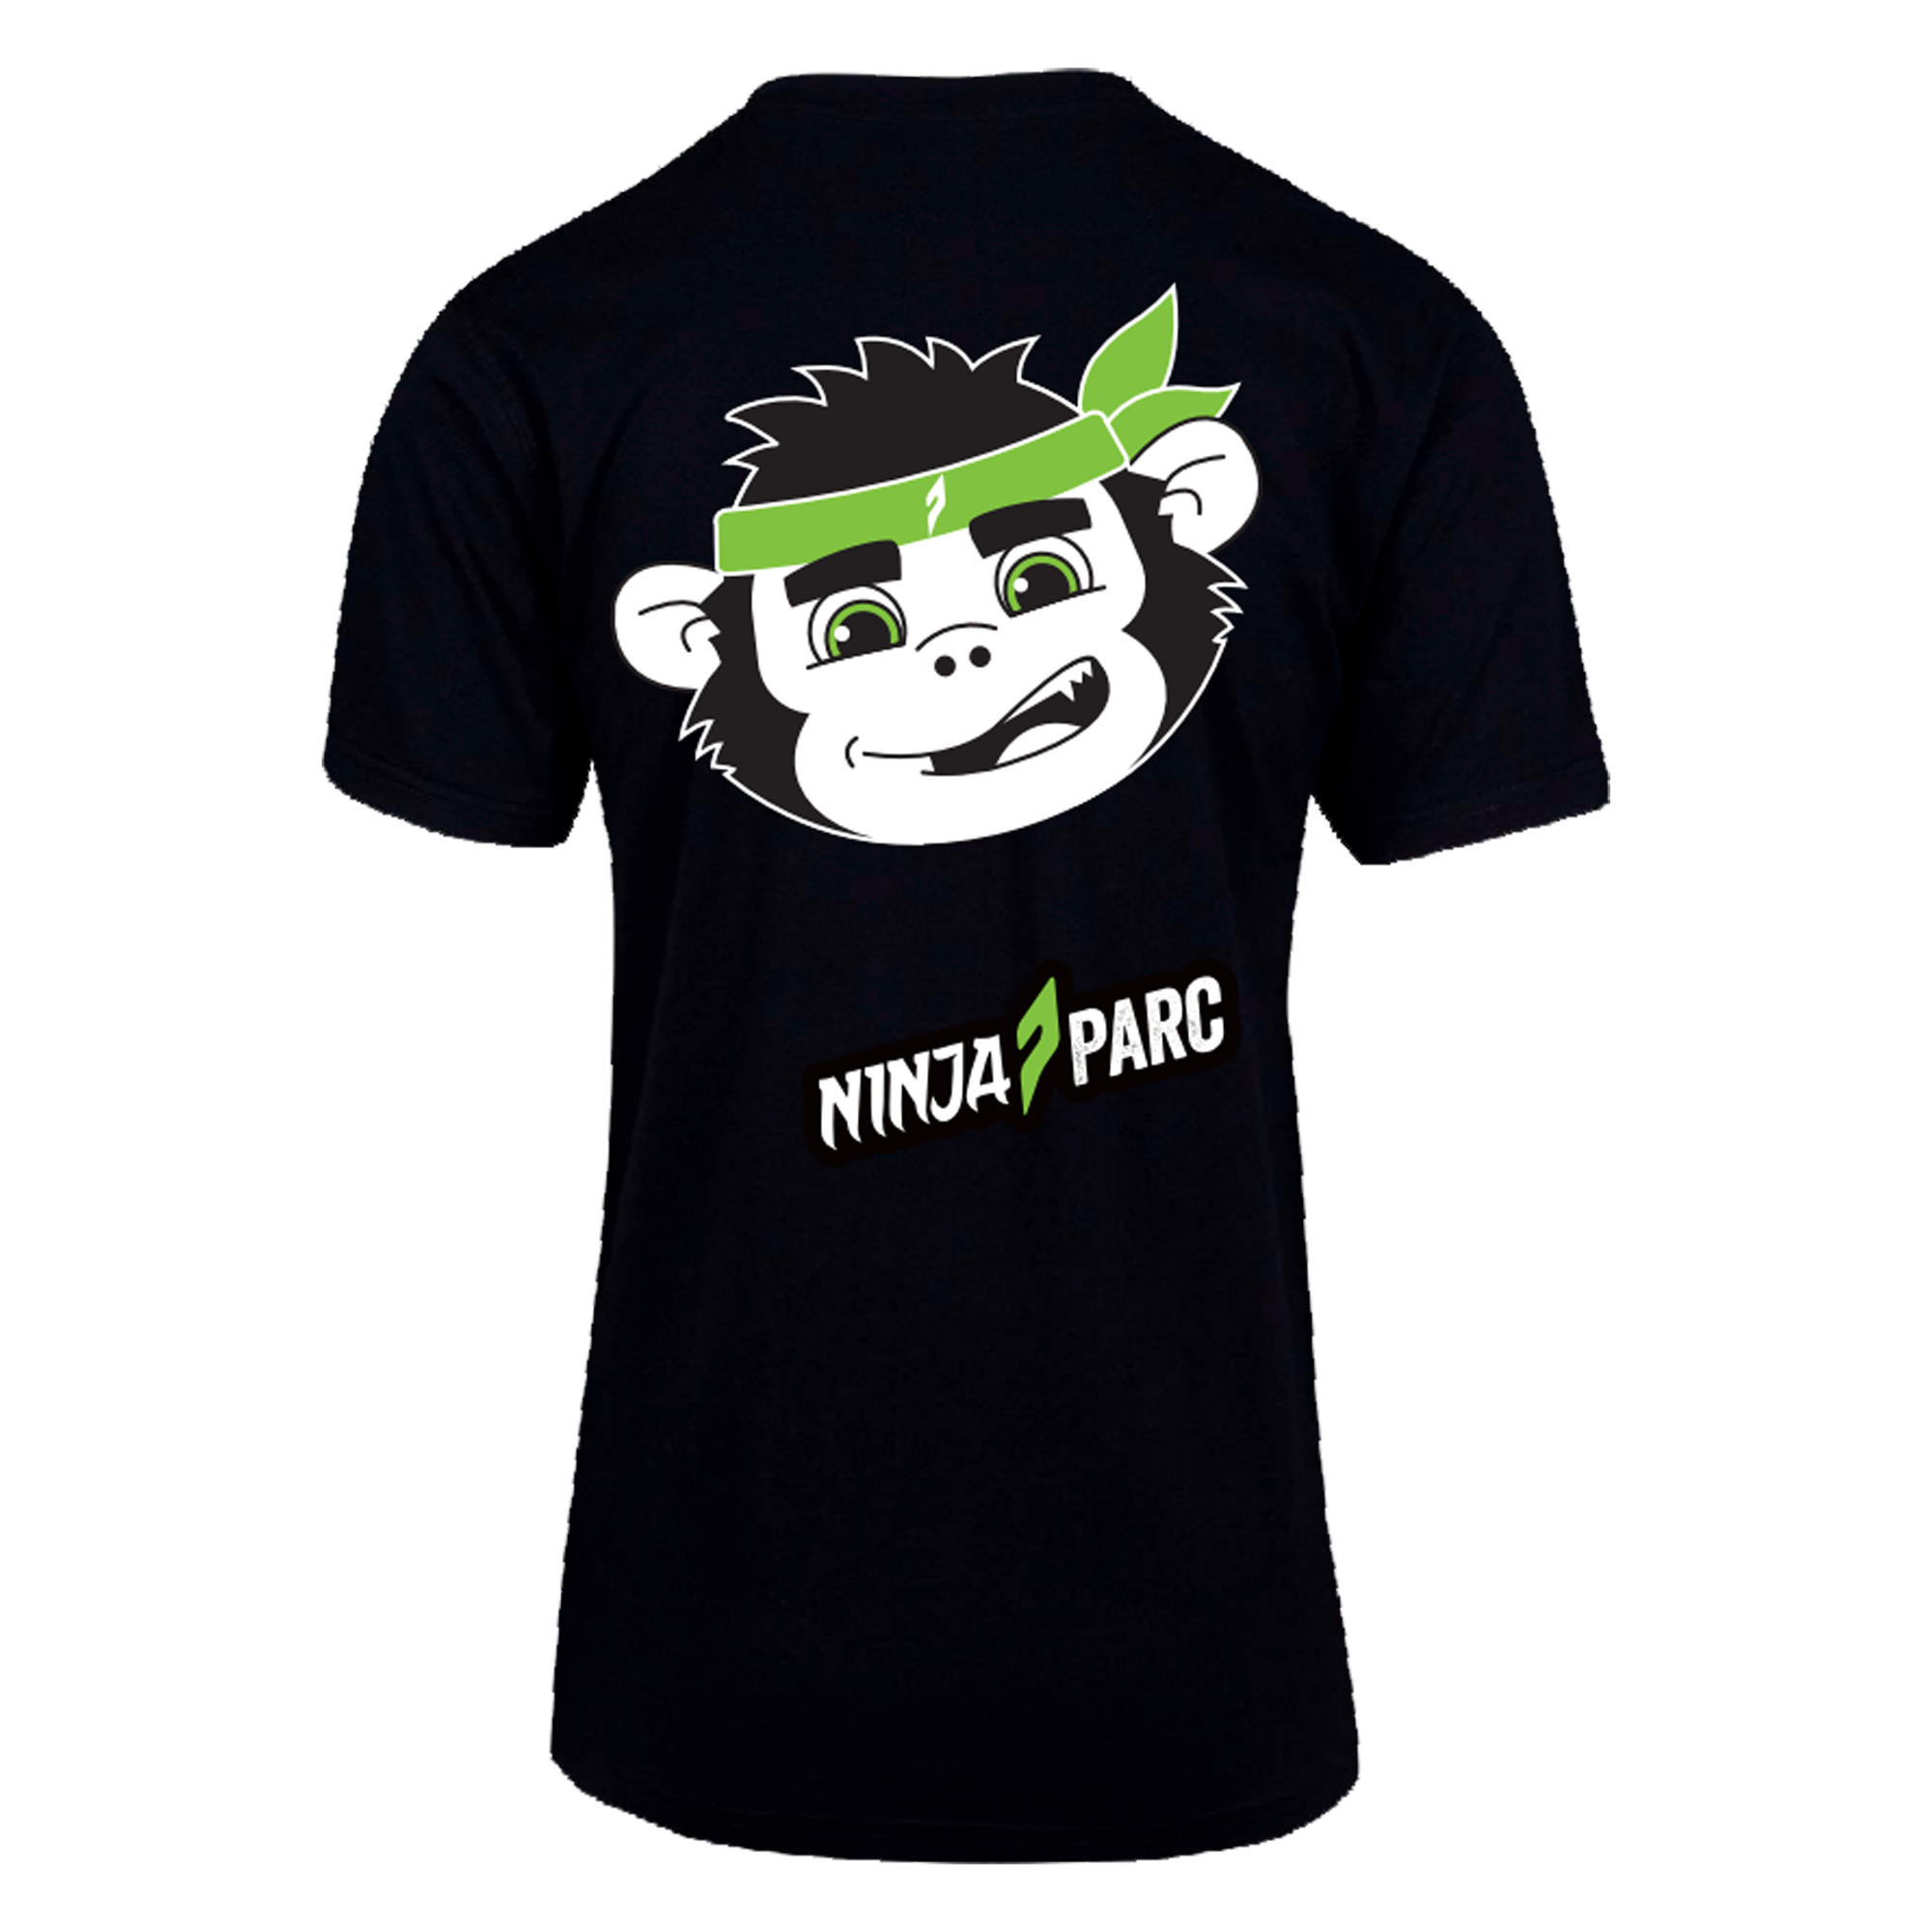 Ninja Parc | PRE-ORDER | Modern Fit Tee - Retail Tee Monkey